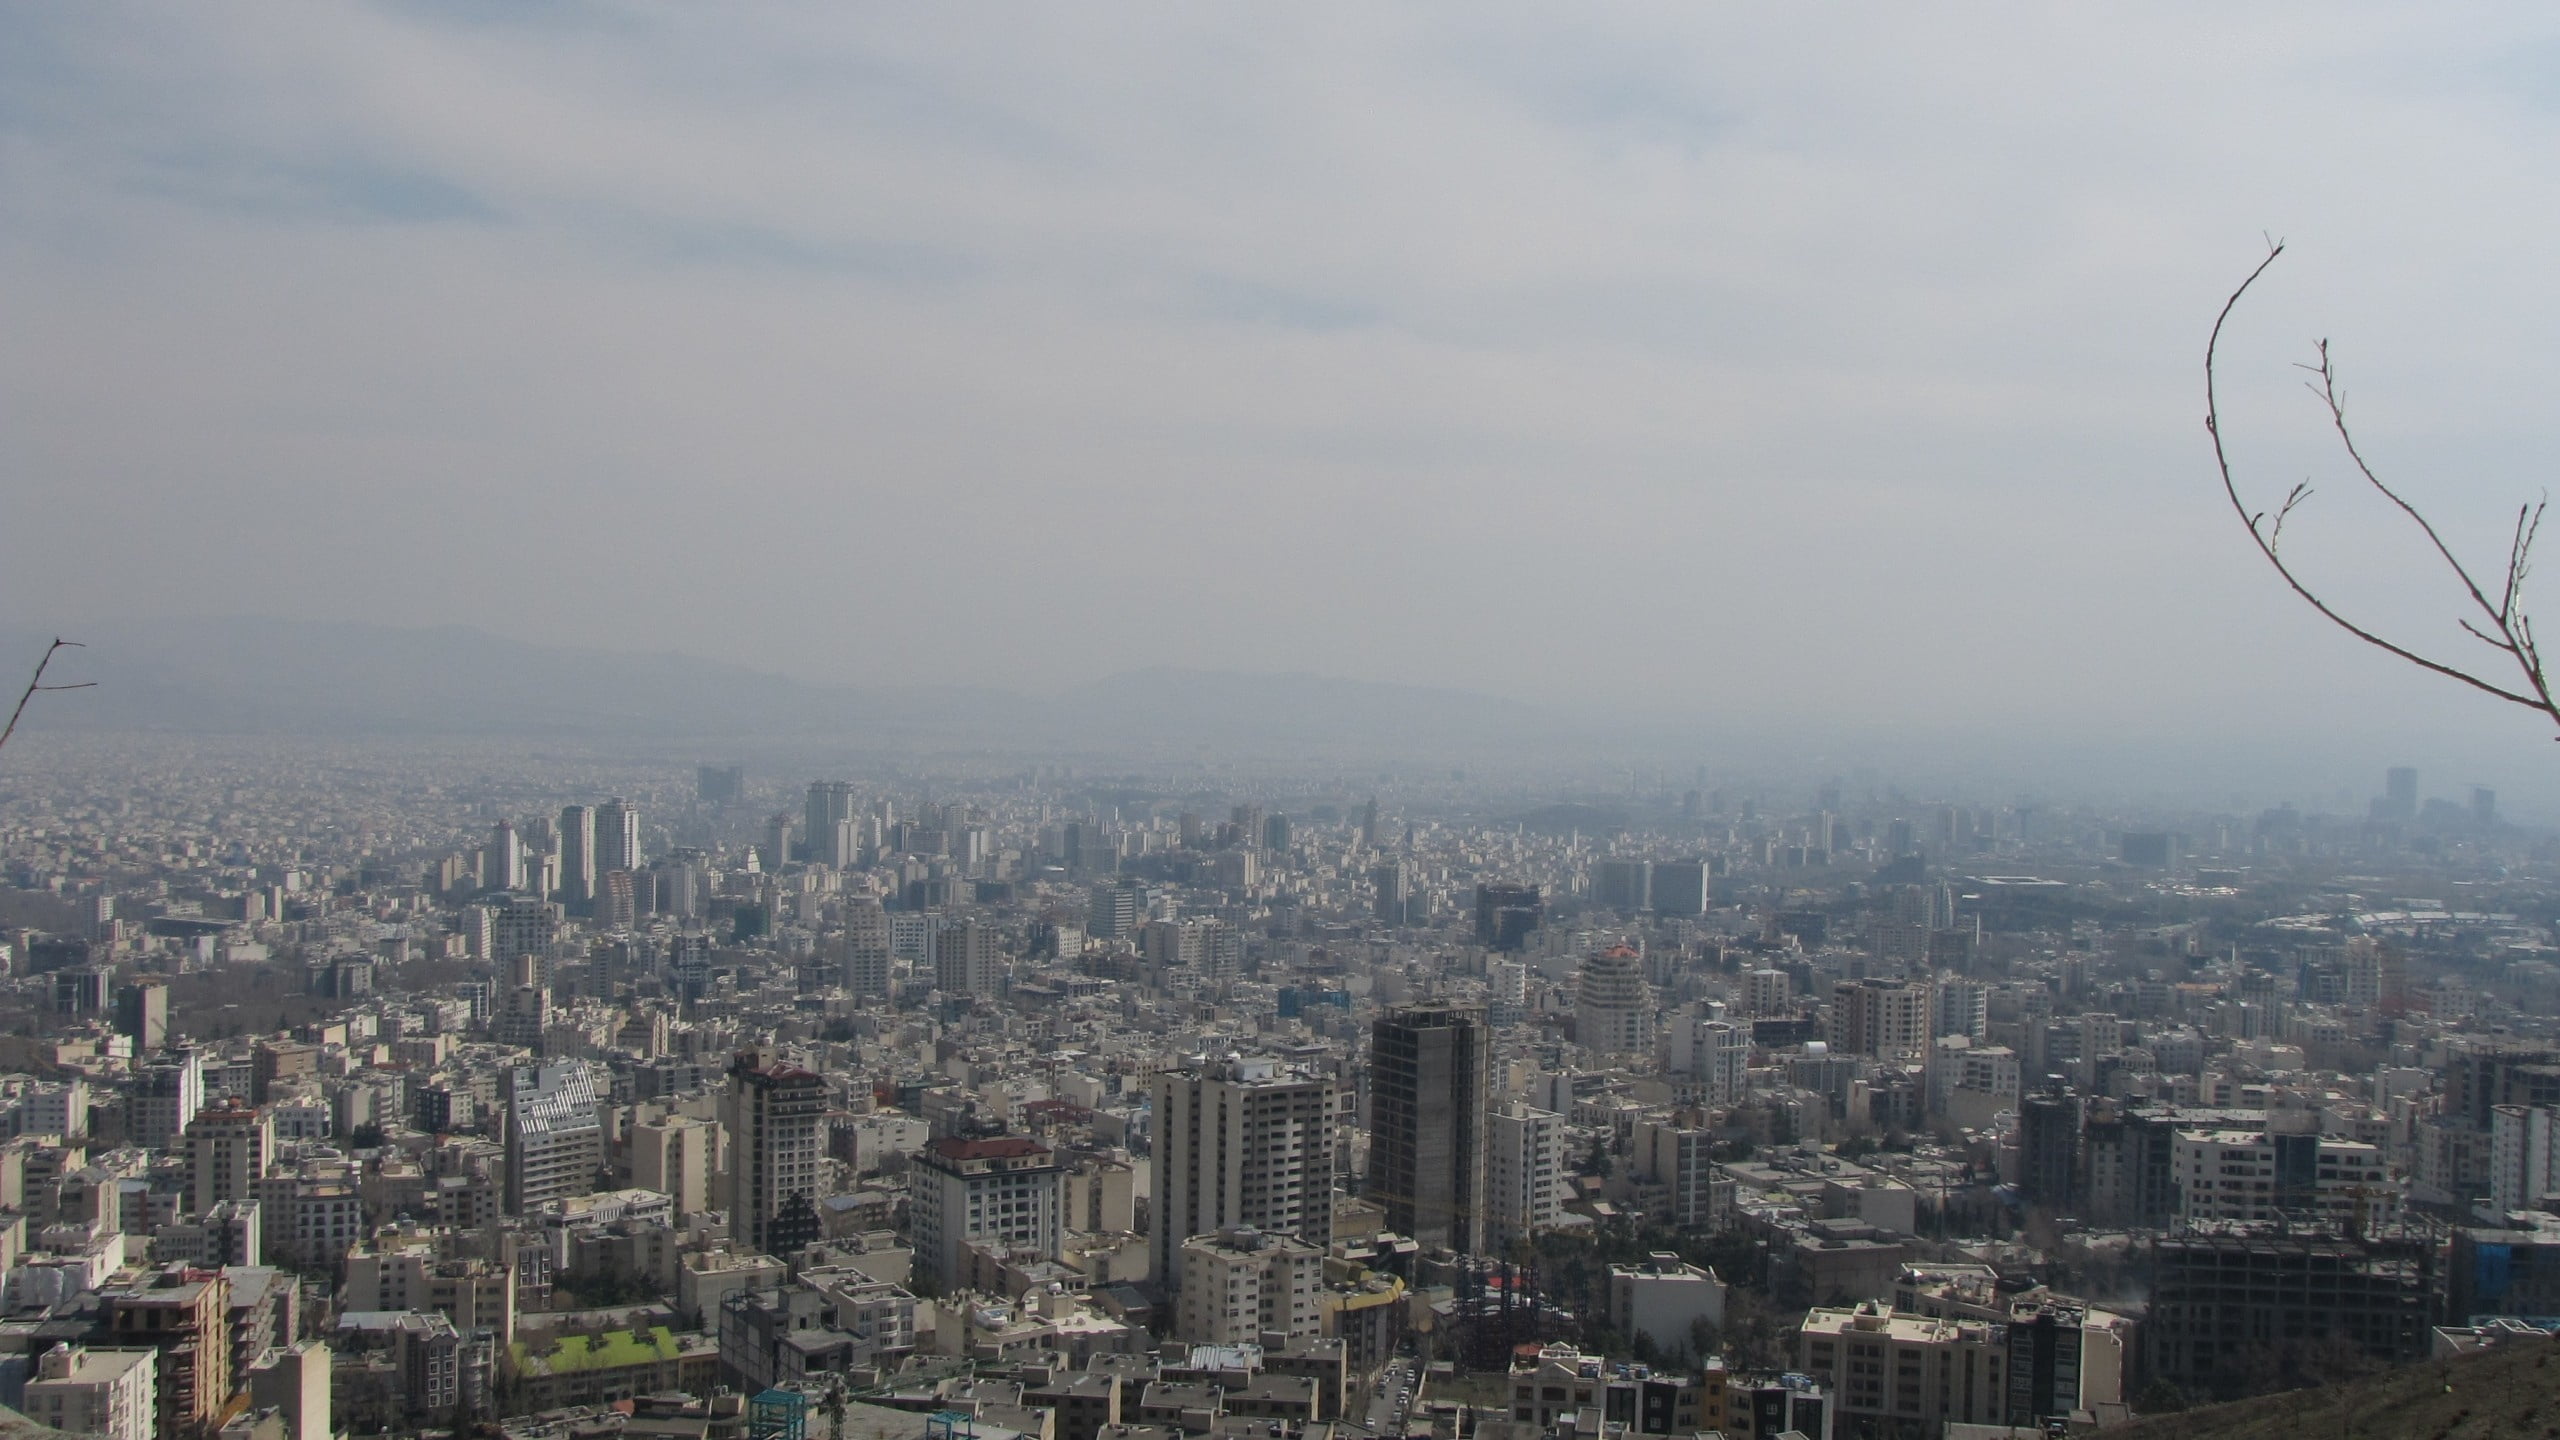 skyscraper lot, tehran, iran, buildings, view from above, cityscape